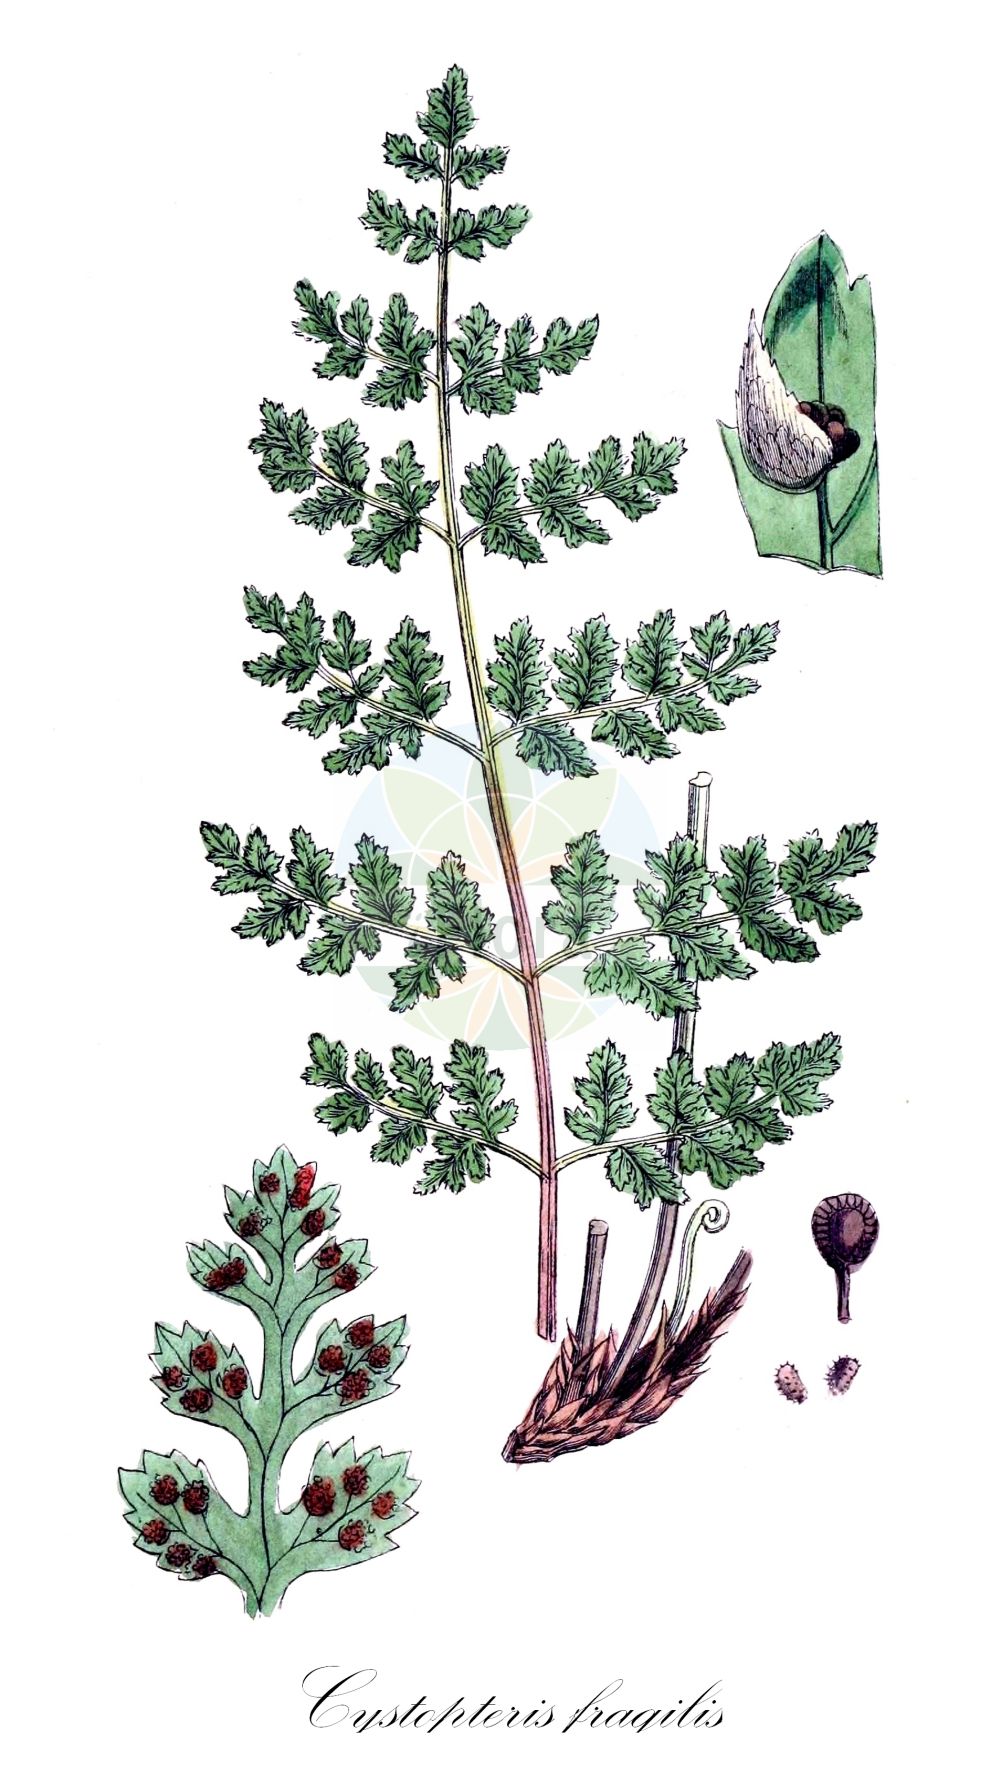 Historische Abbildung von Cystopteris fragilis (Zerbrechlicher Blasenfarn - Brittle Bladder-fern). Das Bild zeigt Blatt, Bluete, Frucht und Same. ---- Historical Drawing of Cystopteris fragilis (Zerbrechlicher Blasenfarn - Brittle Bladder-fern). The image is showing leaf, flower, fruit and seed.(Cystopteris fragilis,Zerbrechlicher Blasenfarn,Brittle Bladder-fern,Cystopteris filix-fragilis,Cystopteris fragilis,Polypodium fragile,Zerbrechlicher Blasenfarn,Dickies Blasenfarn,Brittle Bladder-fern,Cystopteris,Blasenfarn,Bladderferns,Cystopteridaceae,Bladderfern family,Blasenfarngewächse,Blatt,Bluete,Frucht,Same,leaf,flower,fruit,seed,Thomé (1885))